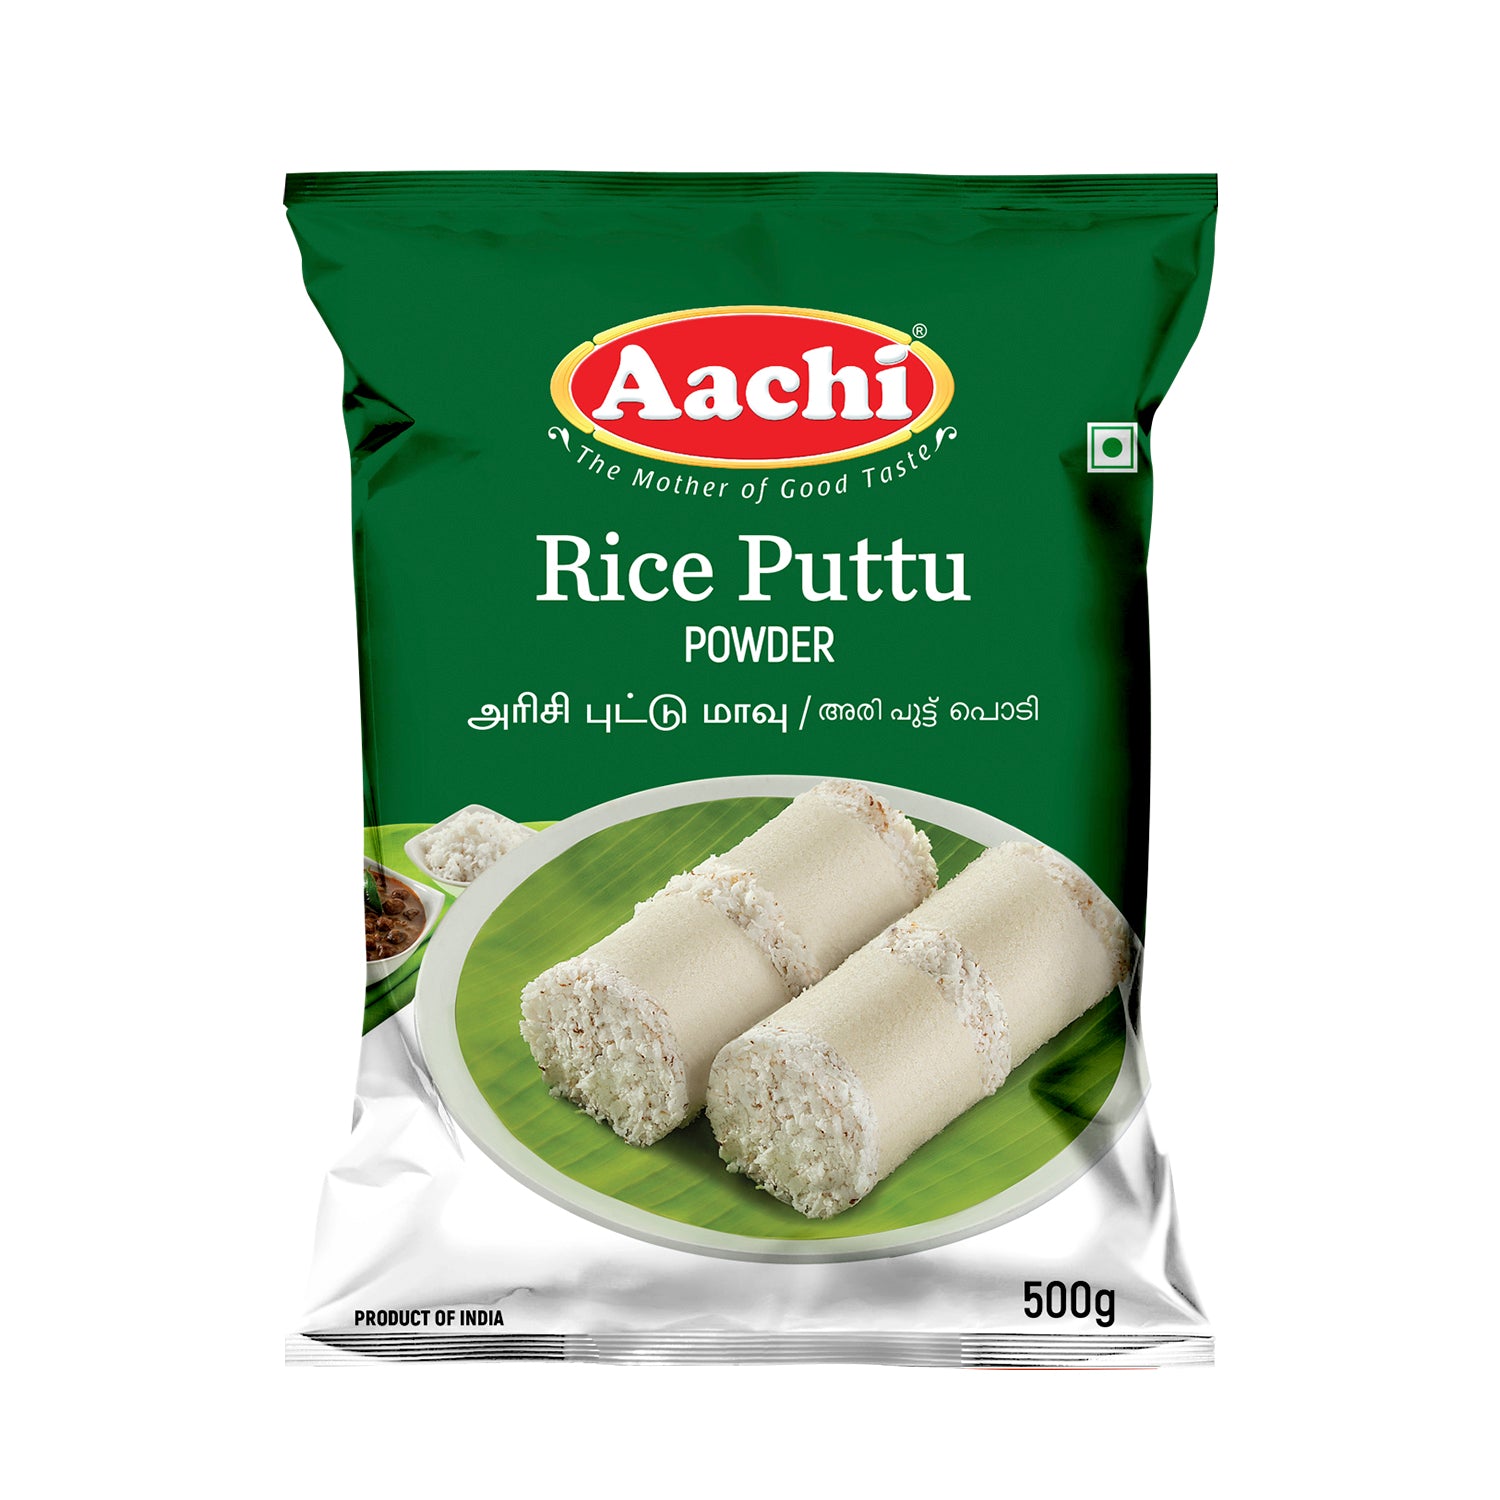 Rice Puttu Powder